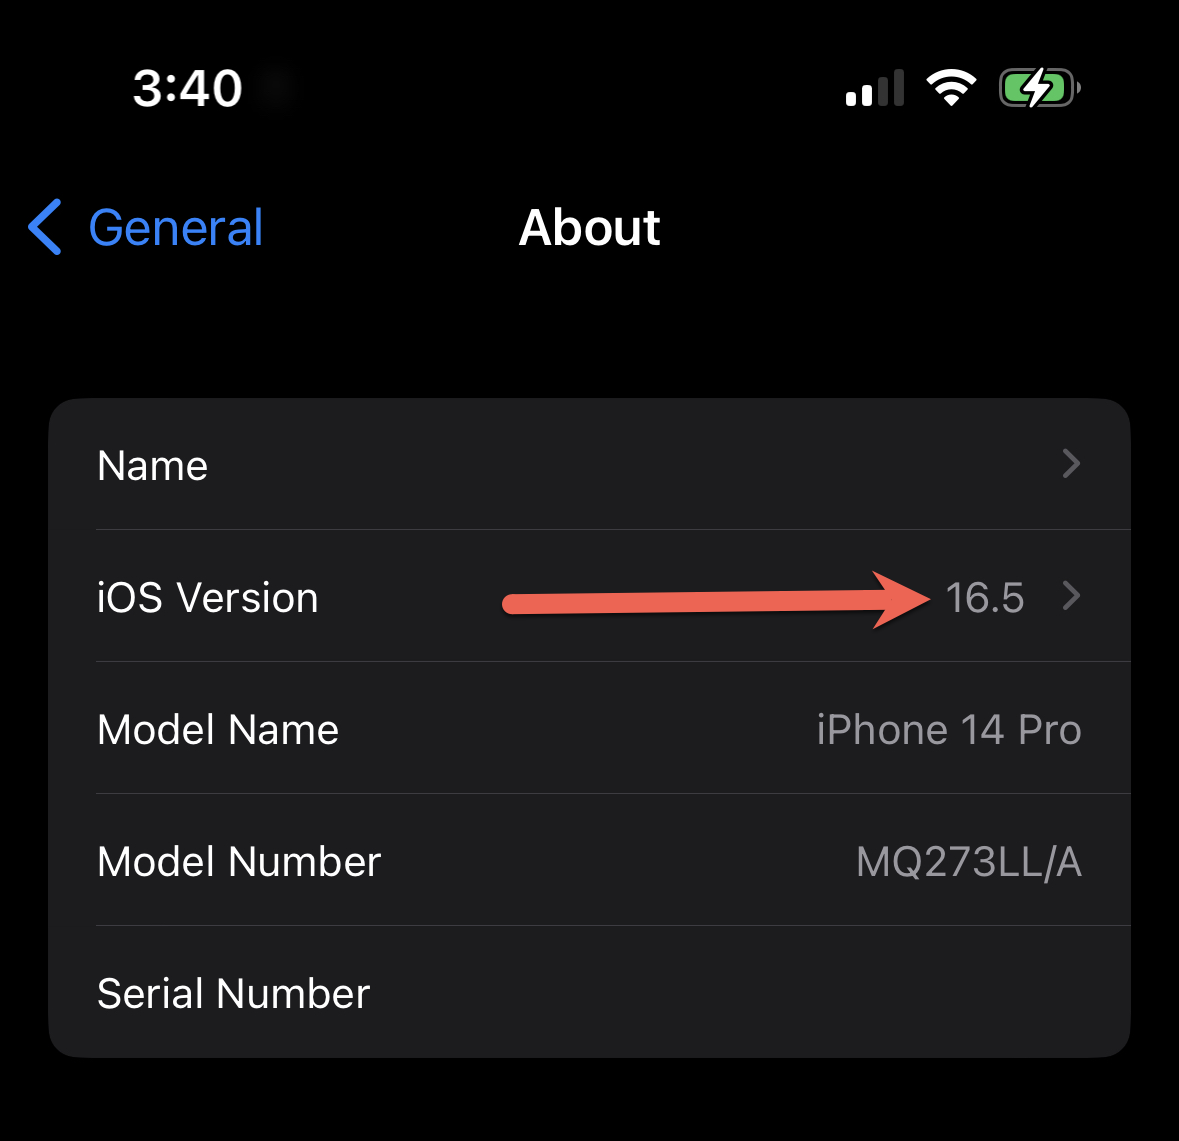 Captura de pantalla que muestra la versión de iOS en la aplicación de Configuración.